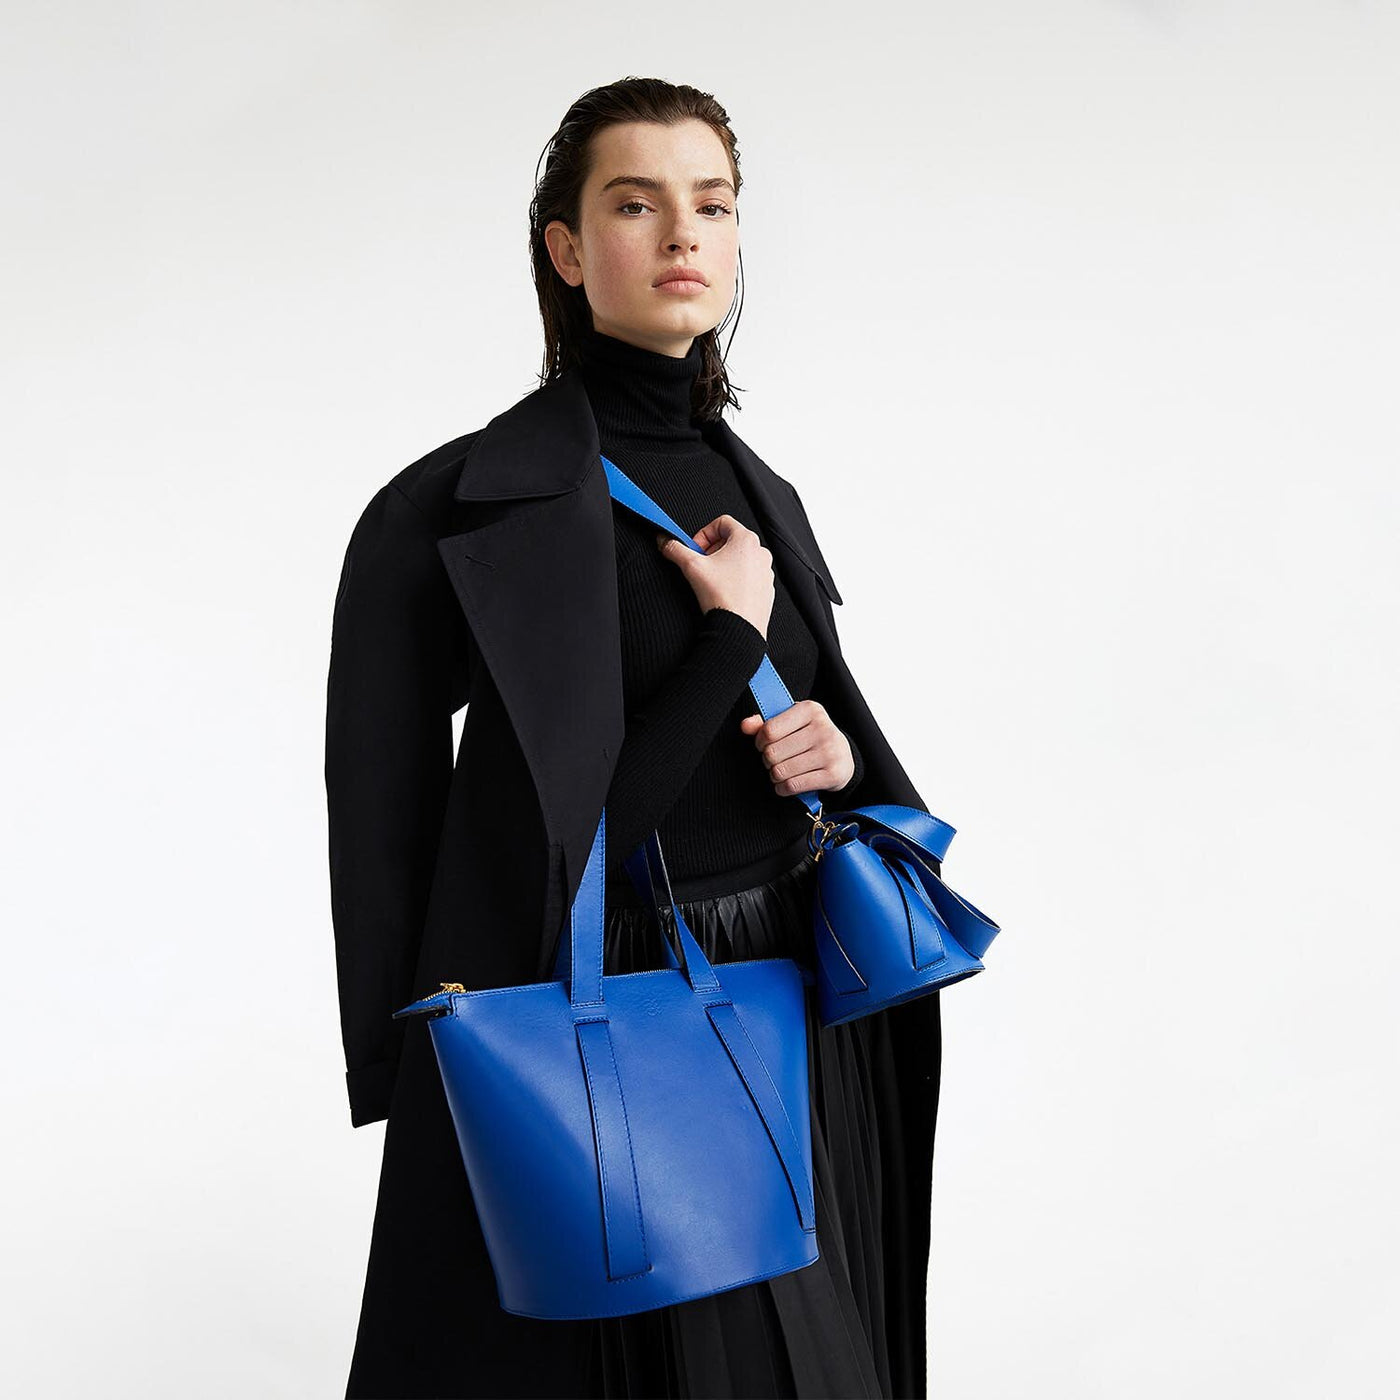 blue leather bucket bag #color_royal-blue